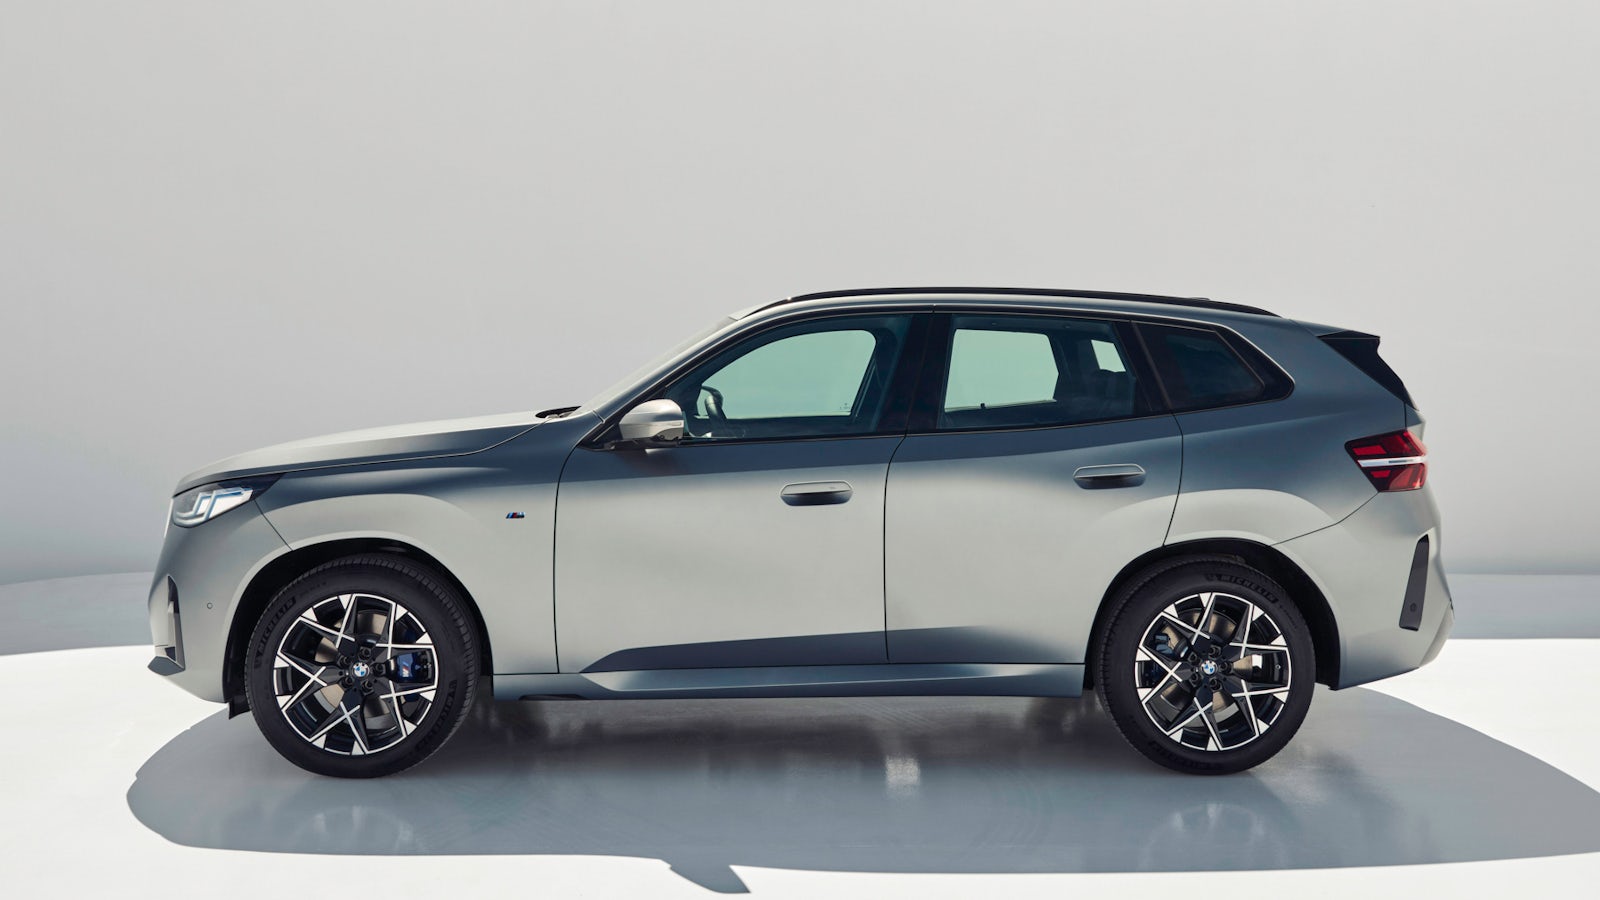 BMW X3 2025